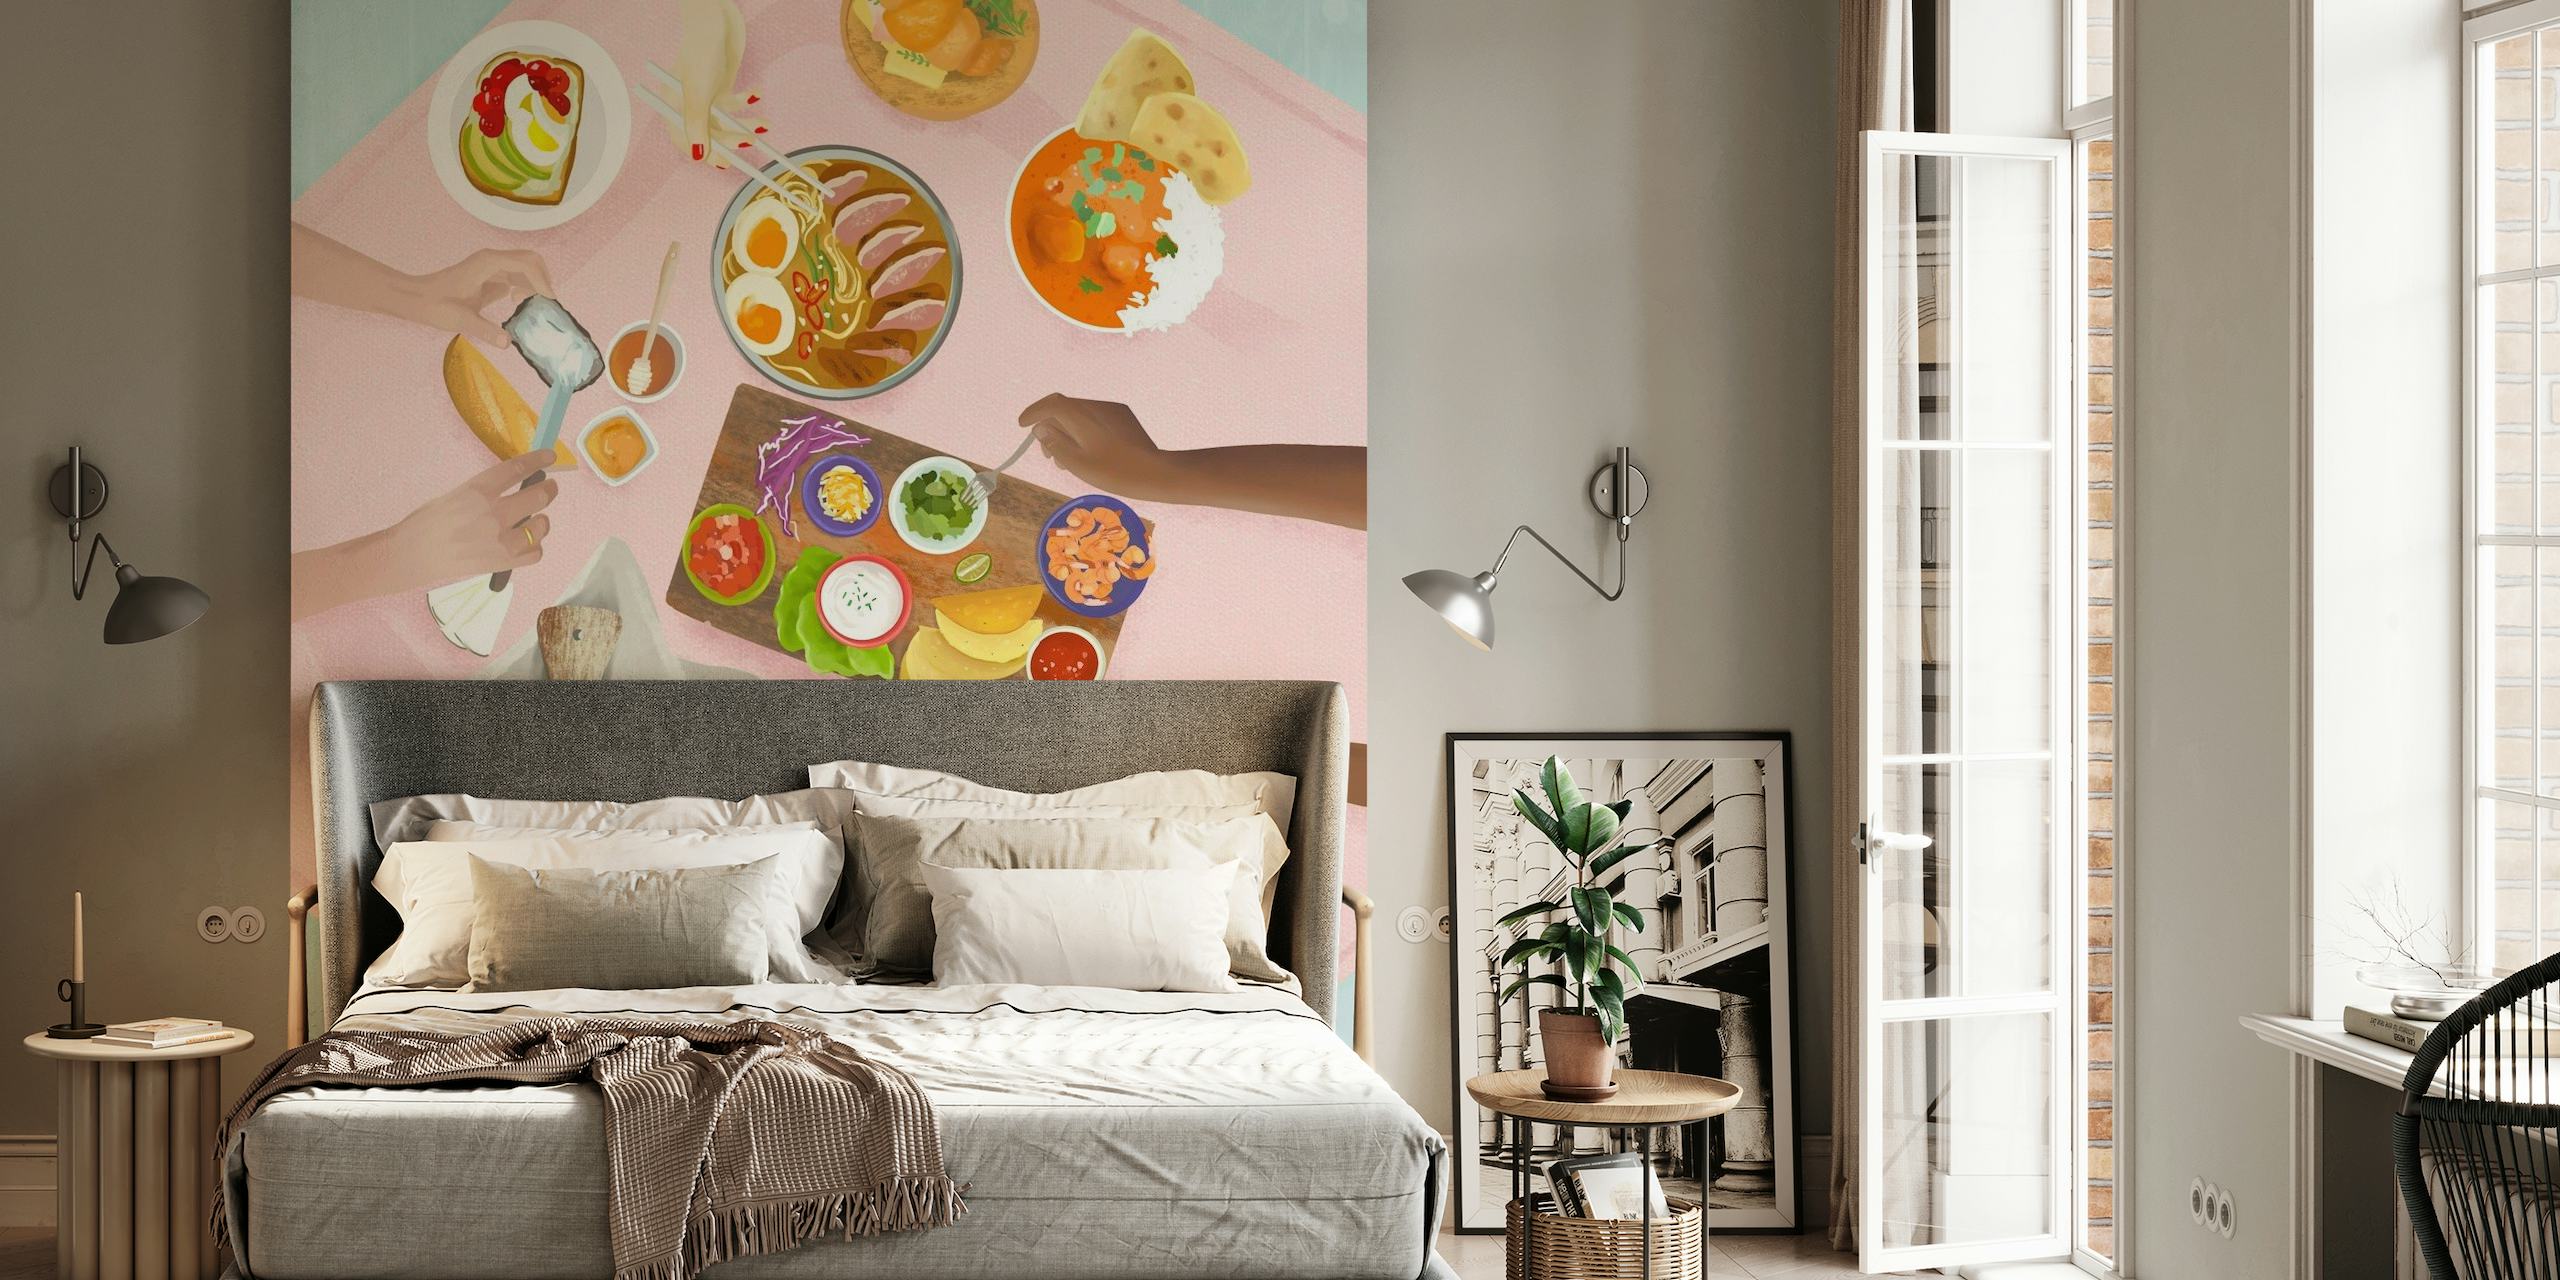 Geïllustreerde muurschildering met brunchthema en bovenaanzicht van een eettafel met diverse gerechten en bloemen